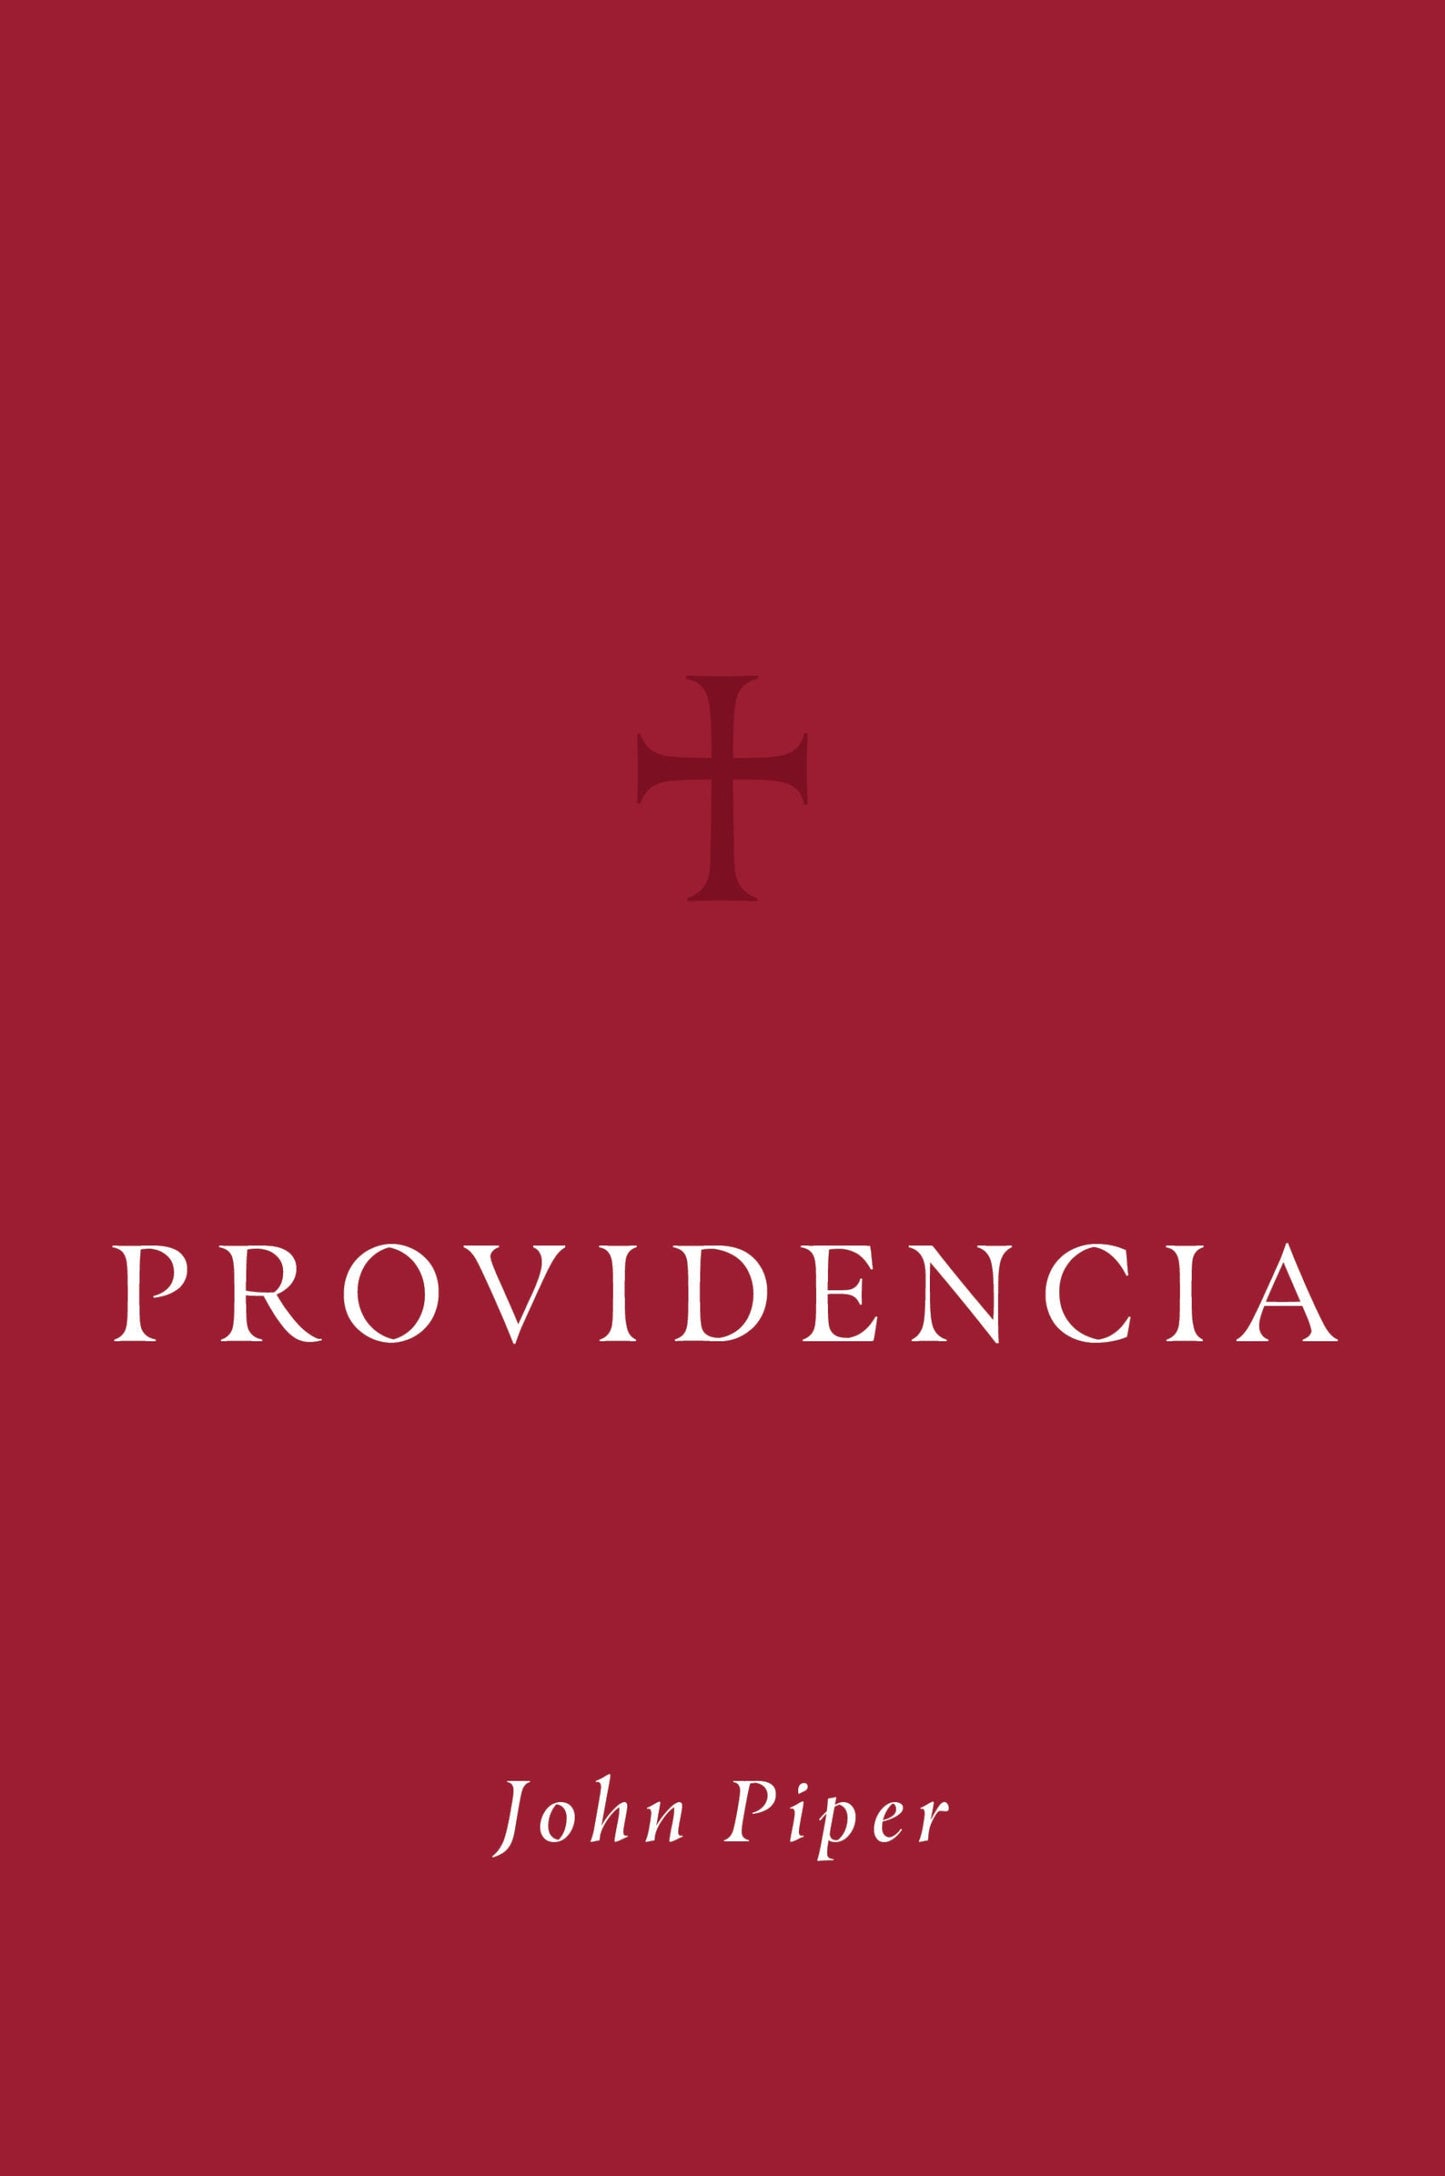 Providencia (Tapa Dura)